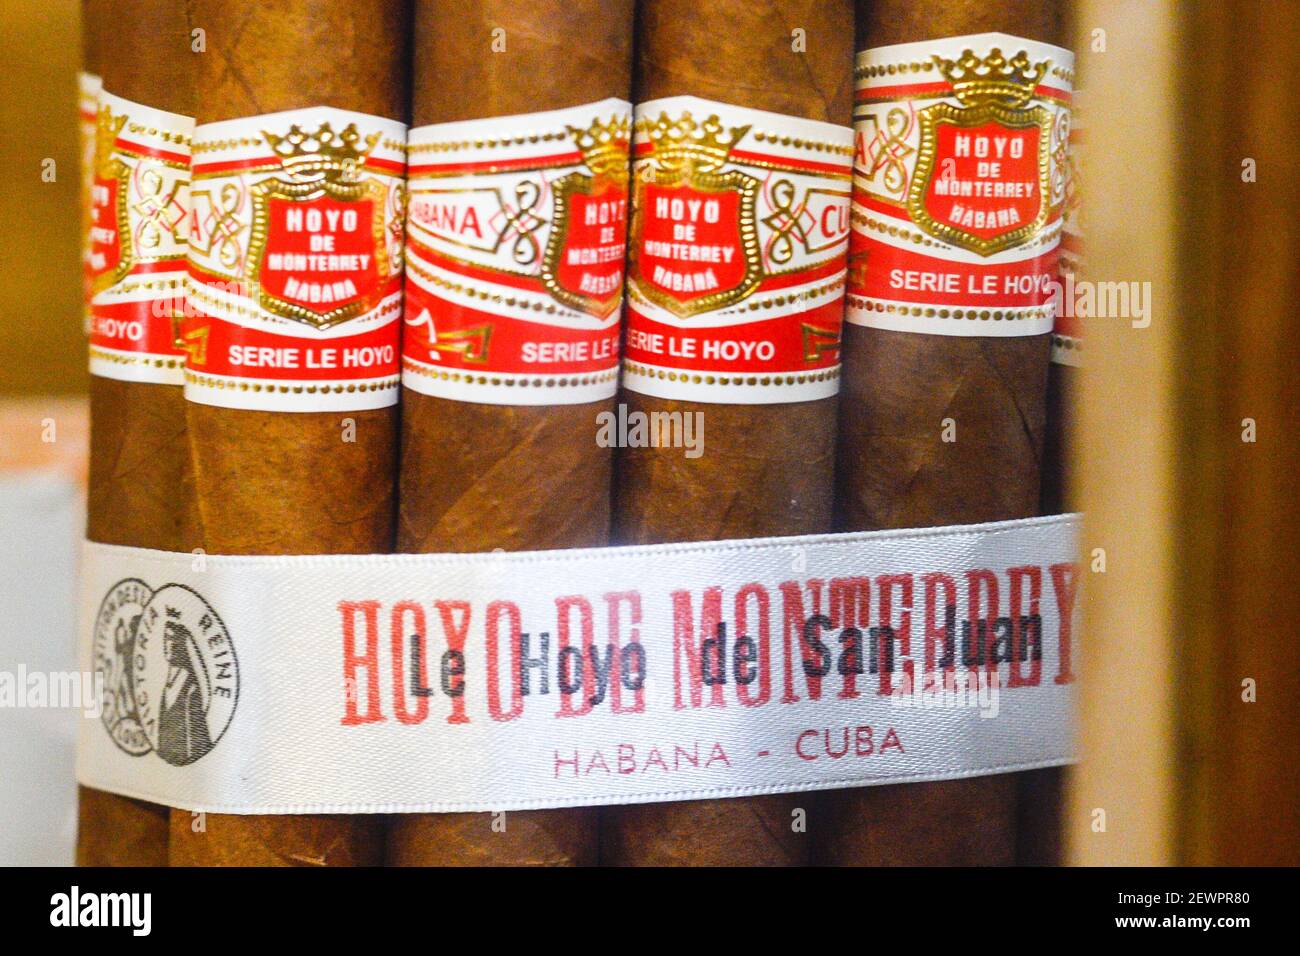 Cigarros cubanos en exhibición en una ventana de tienda. Esos cigarros son rodados de hojas de tabaco que se encuentran en todo el país de Cuba. El relleno, el aglutinante y la envoltura pueden provenir de diferentes porciones de la isla. Toda la producción de cigarros en Cuba es controlada por el gobierno cubano, y cada Marca puede ser rodada en varias fábricas diferentes en Cuba. Cuba produce cigarros hechos a mano y a máquina. Todas las cajas y etiquetas están marcadas como Hecho en Cuba. Los cigarros hechos a máquina terminados a mano añaden a Hecho un mano, mientras que los puros completamente hechos a mano dicen totalmente un mano en el texto del guión, sin embargo Foto de stock